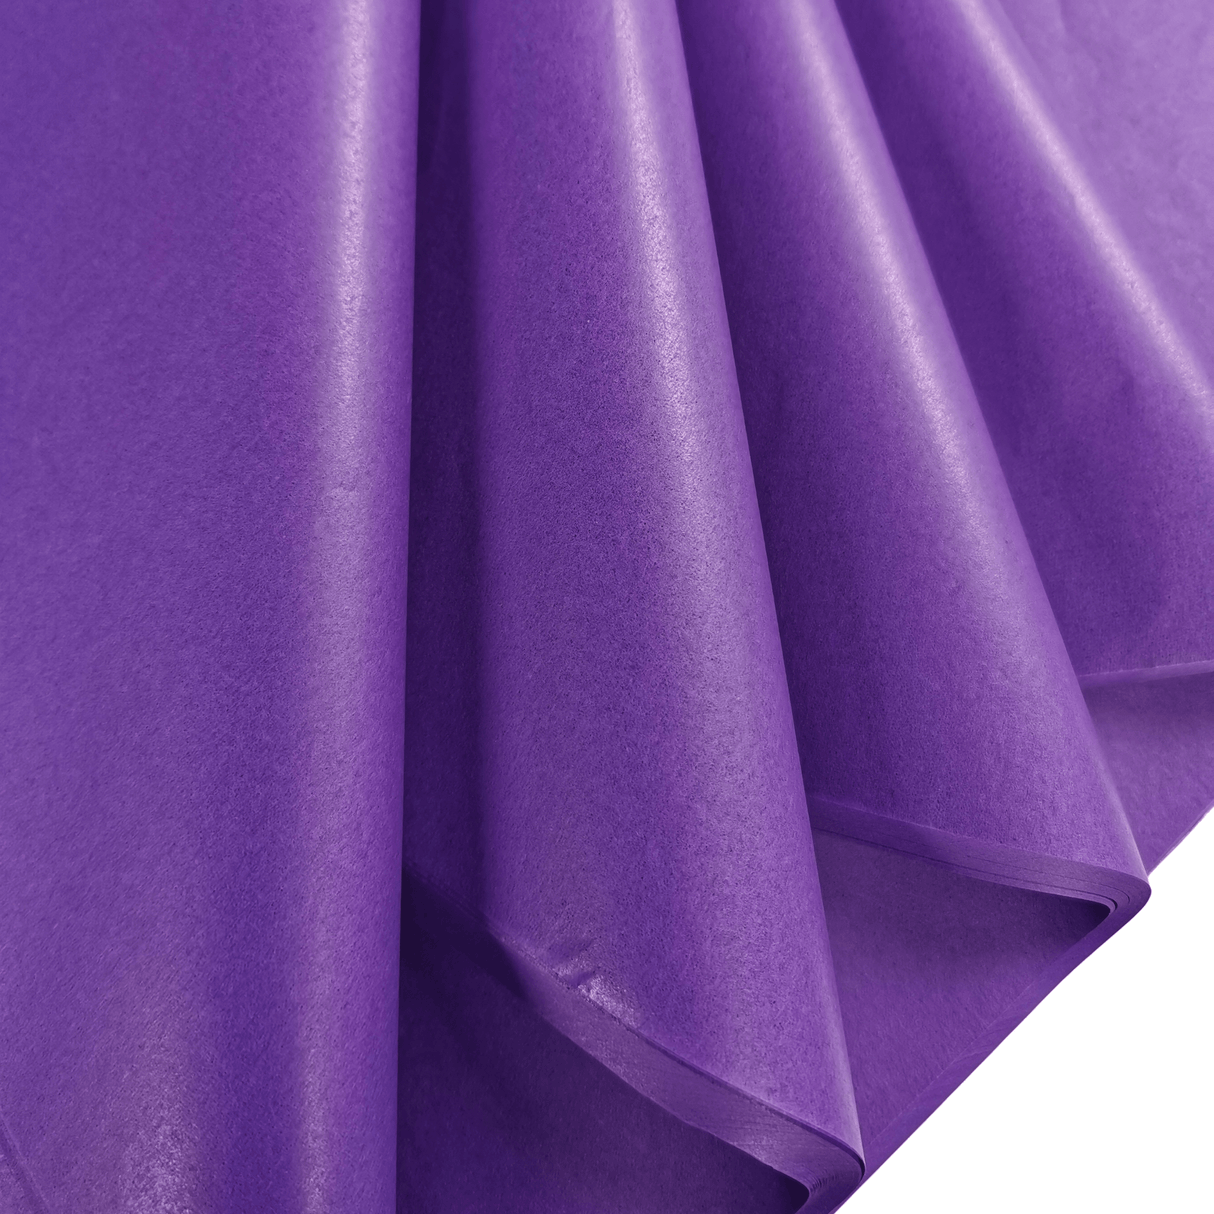 Violet Tissue Paper Folds